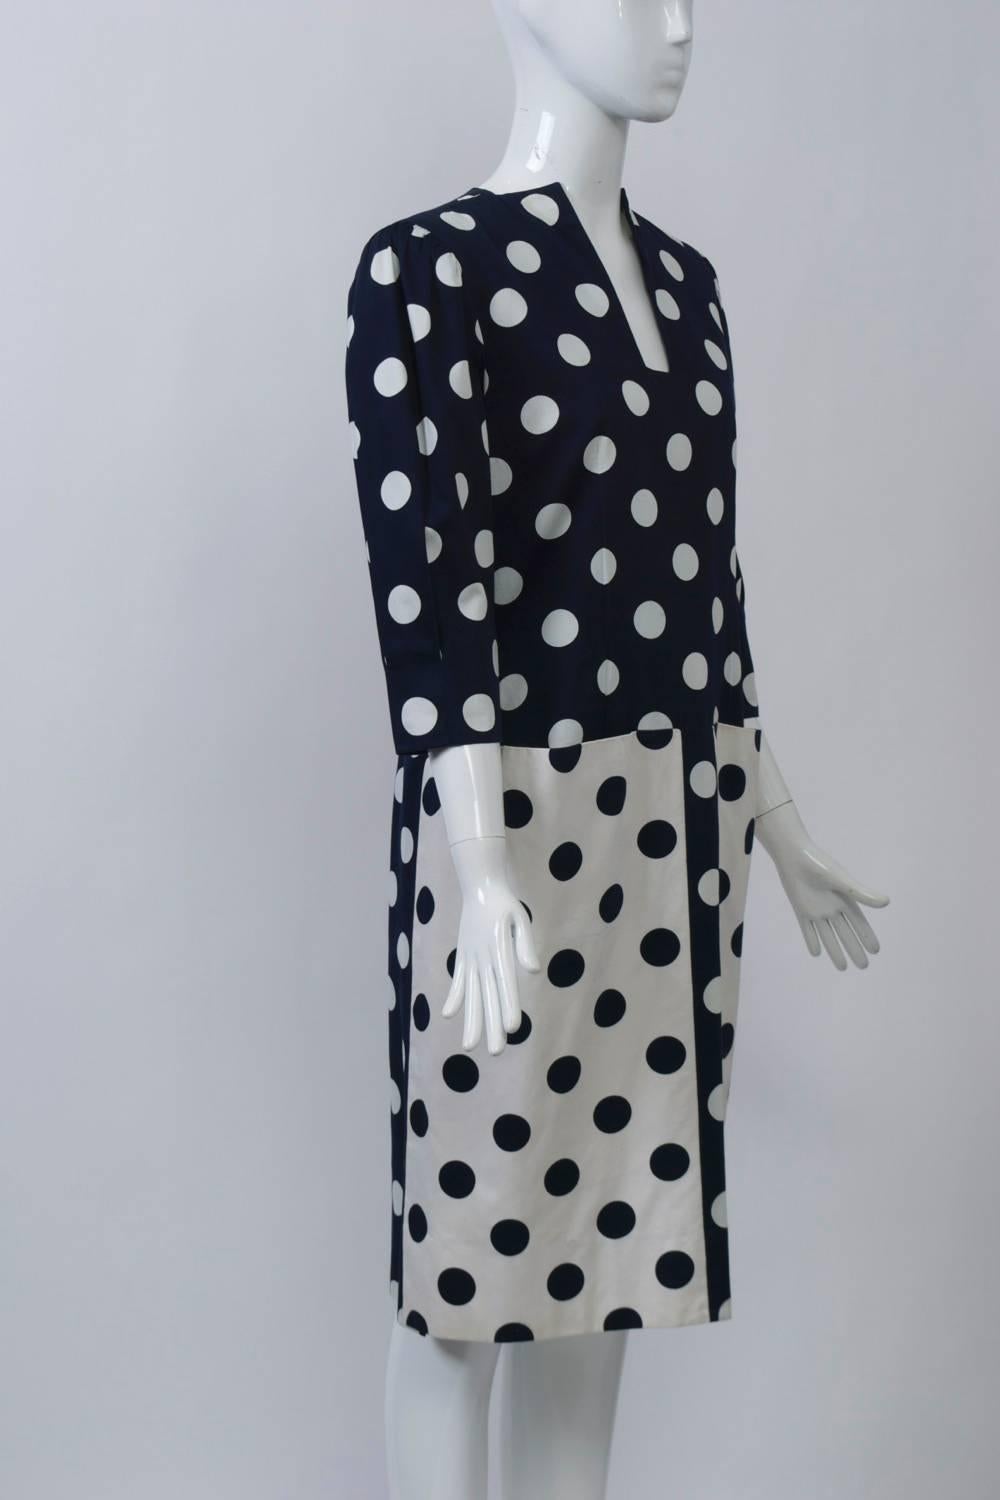 1980er-Jahre-Kleid von Pauline Trigére aus glänzender Baumwolle, bedruckt mit marineblauen und weißen Polka-Dots und mit der für die Designerin typischen Liebe zum Detail. Der Körper des Kleides in marineblauem Grund mit weißen Punkten hat einen